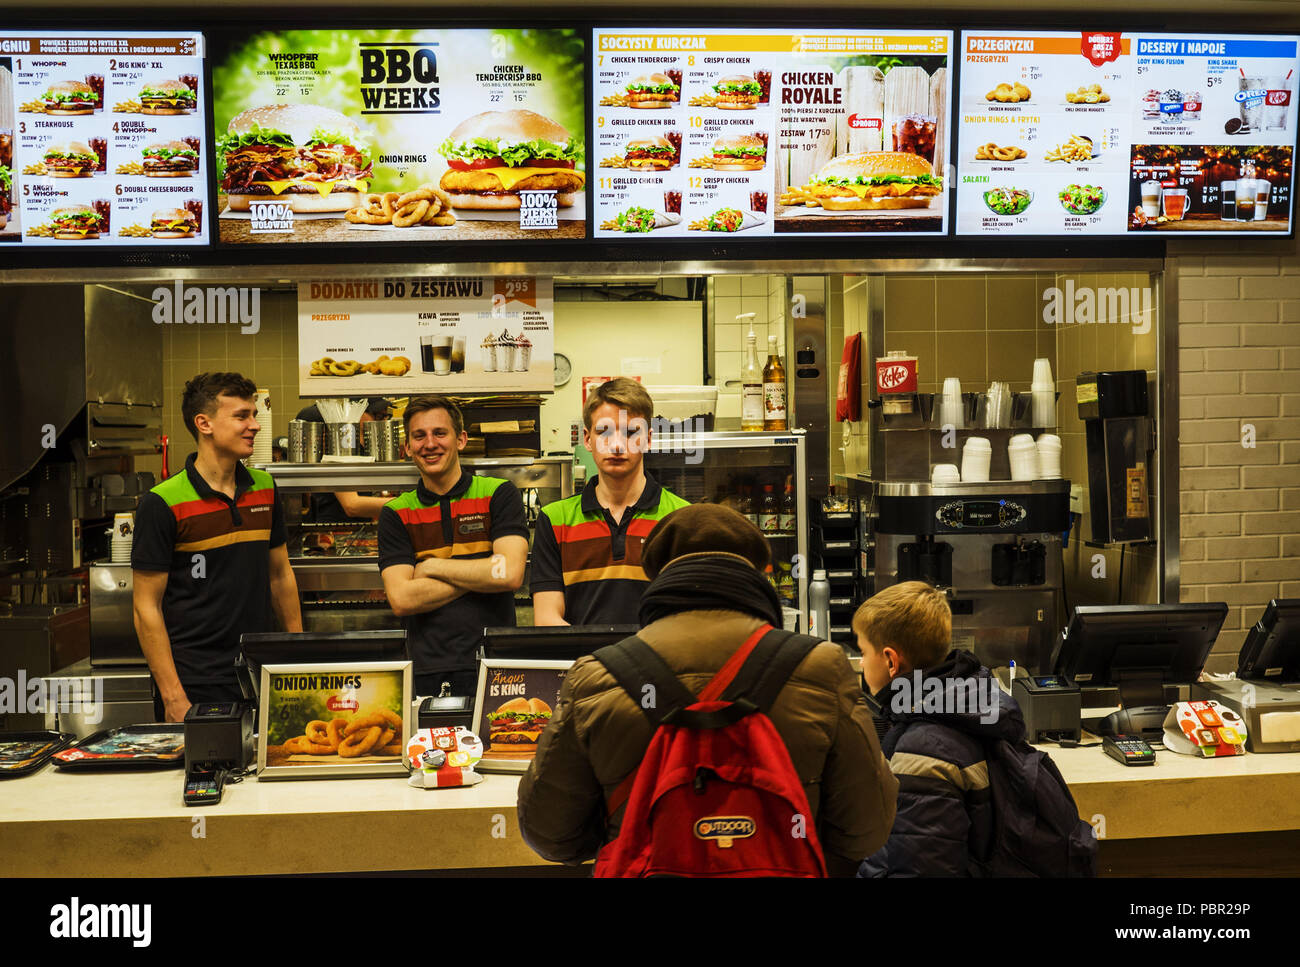 Cracovie, Pologne. 18 Mar, 2018. Restaurant Burger King à Galeria  Krakowska. Burger King (BK) est un Américain de la chaîne mondiale  d'hamburger de restauration rapide. Situé dans la zone non incorporée du